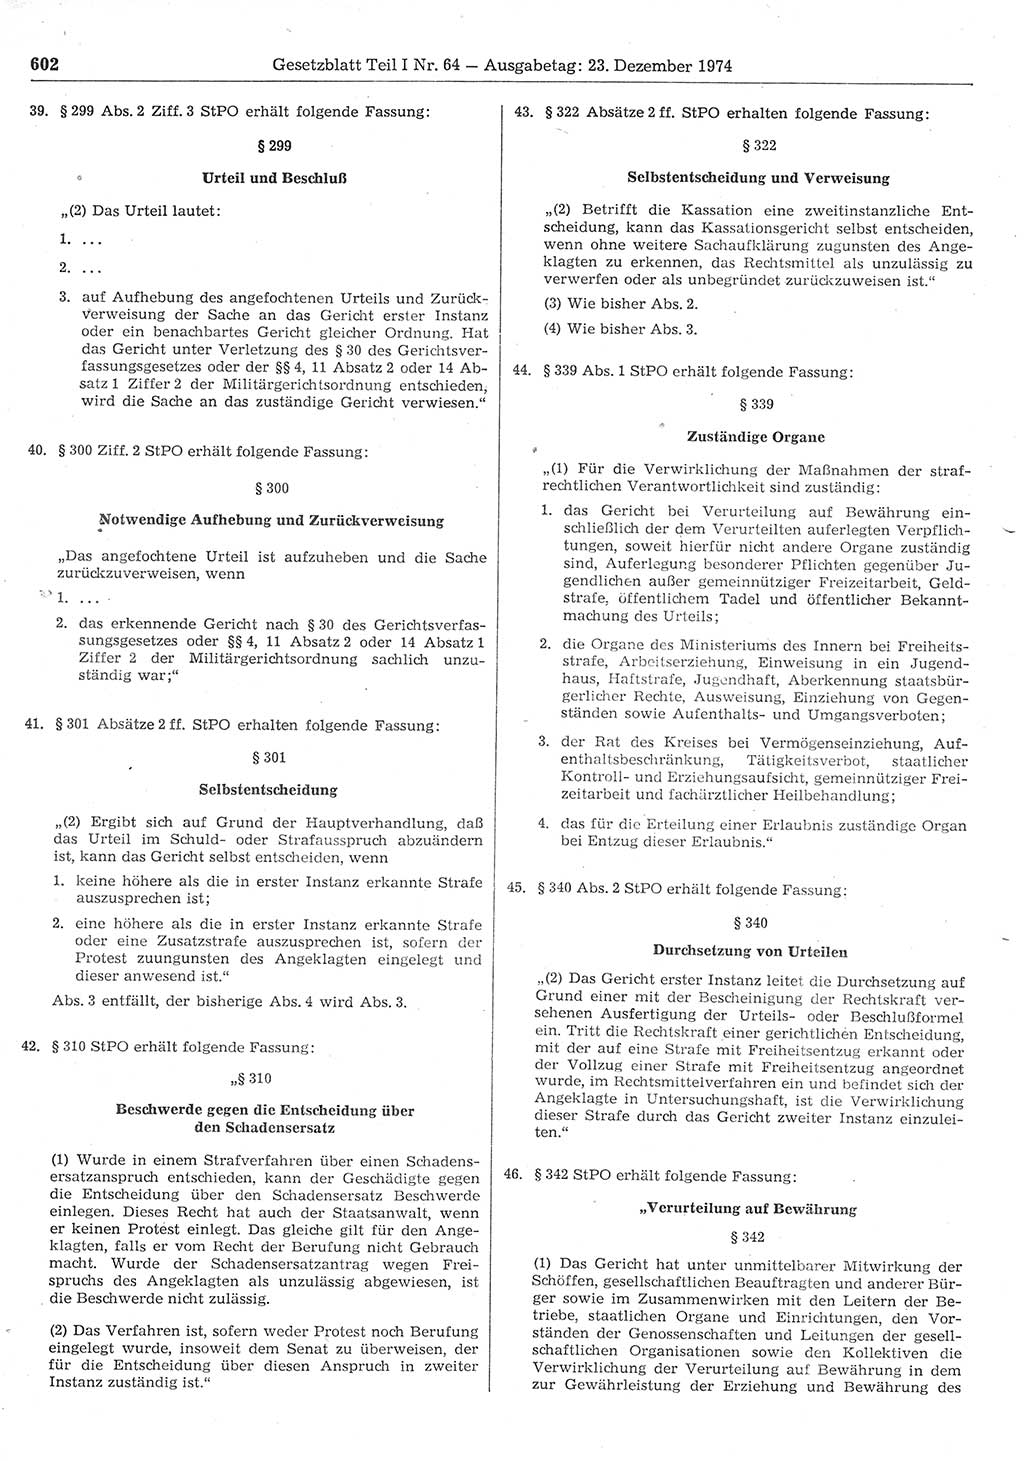 Gesetzblatt (GBl.) der Deutschen Demokratischen Republik (DDR) Teil Ⅰ 1974, Seite 602 (GBl. DDR Ⅰ 1974, S. 602)